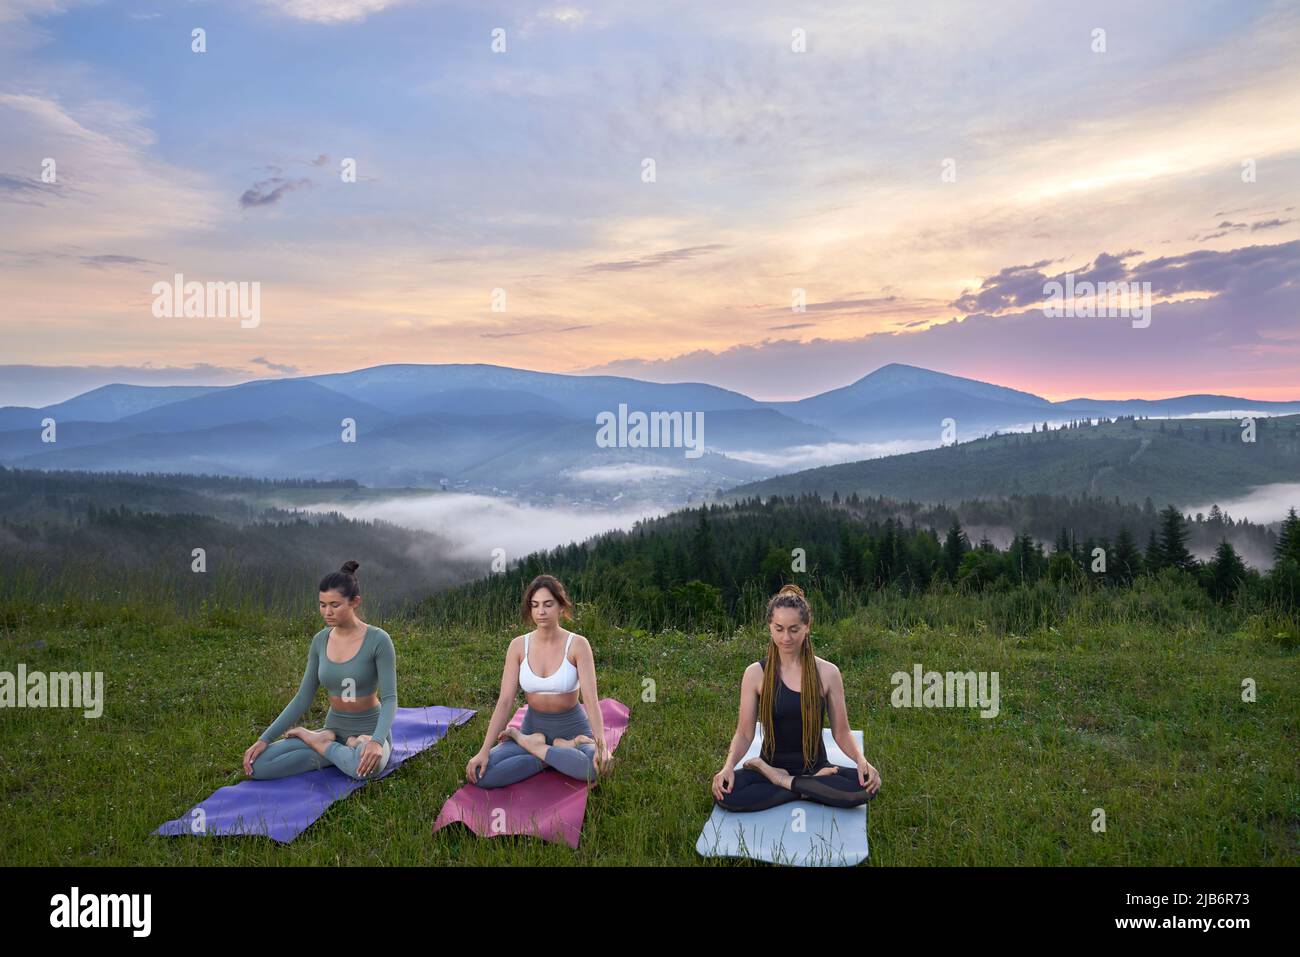 Gruppe von jungen fit Frauen in Sportkleidung gekleidet genießen Outdoor-Meditation im Sommer. Konzept der Menschen, aktive und gesunde Lebensweise. Stockfoto